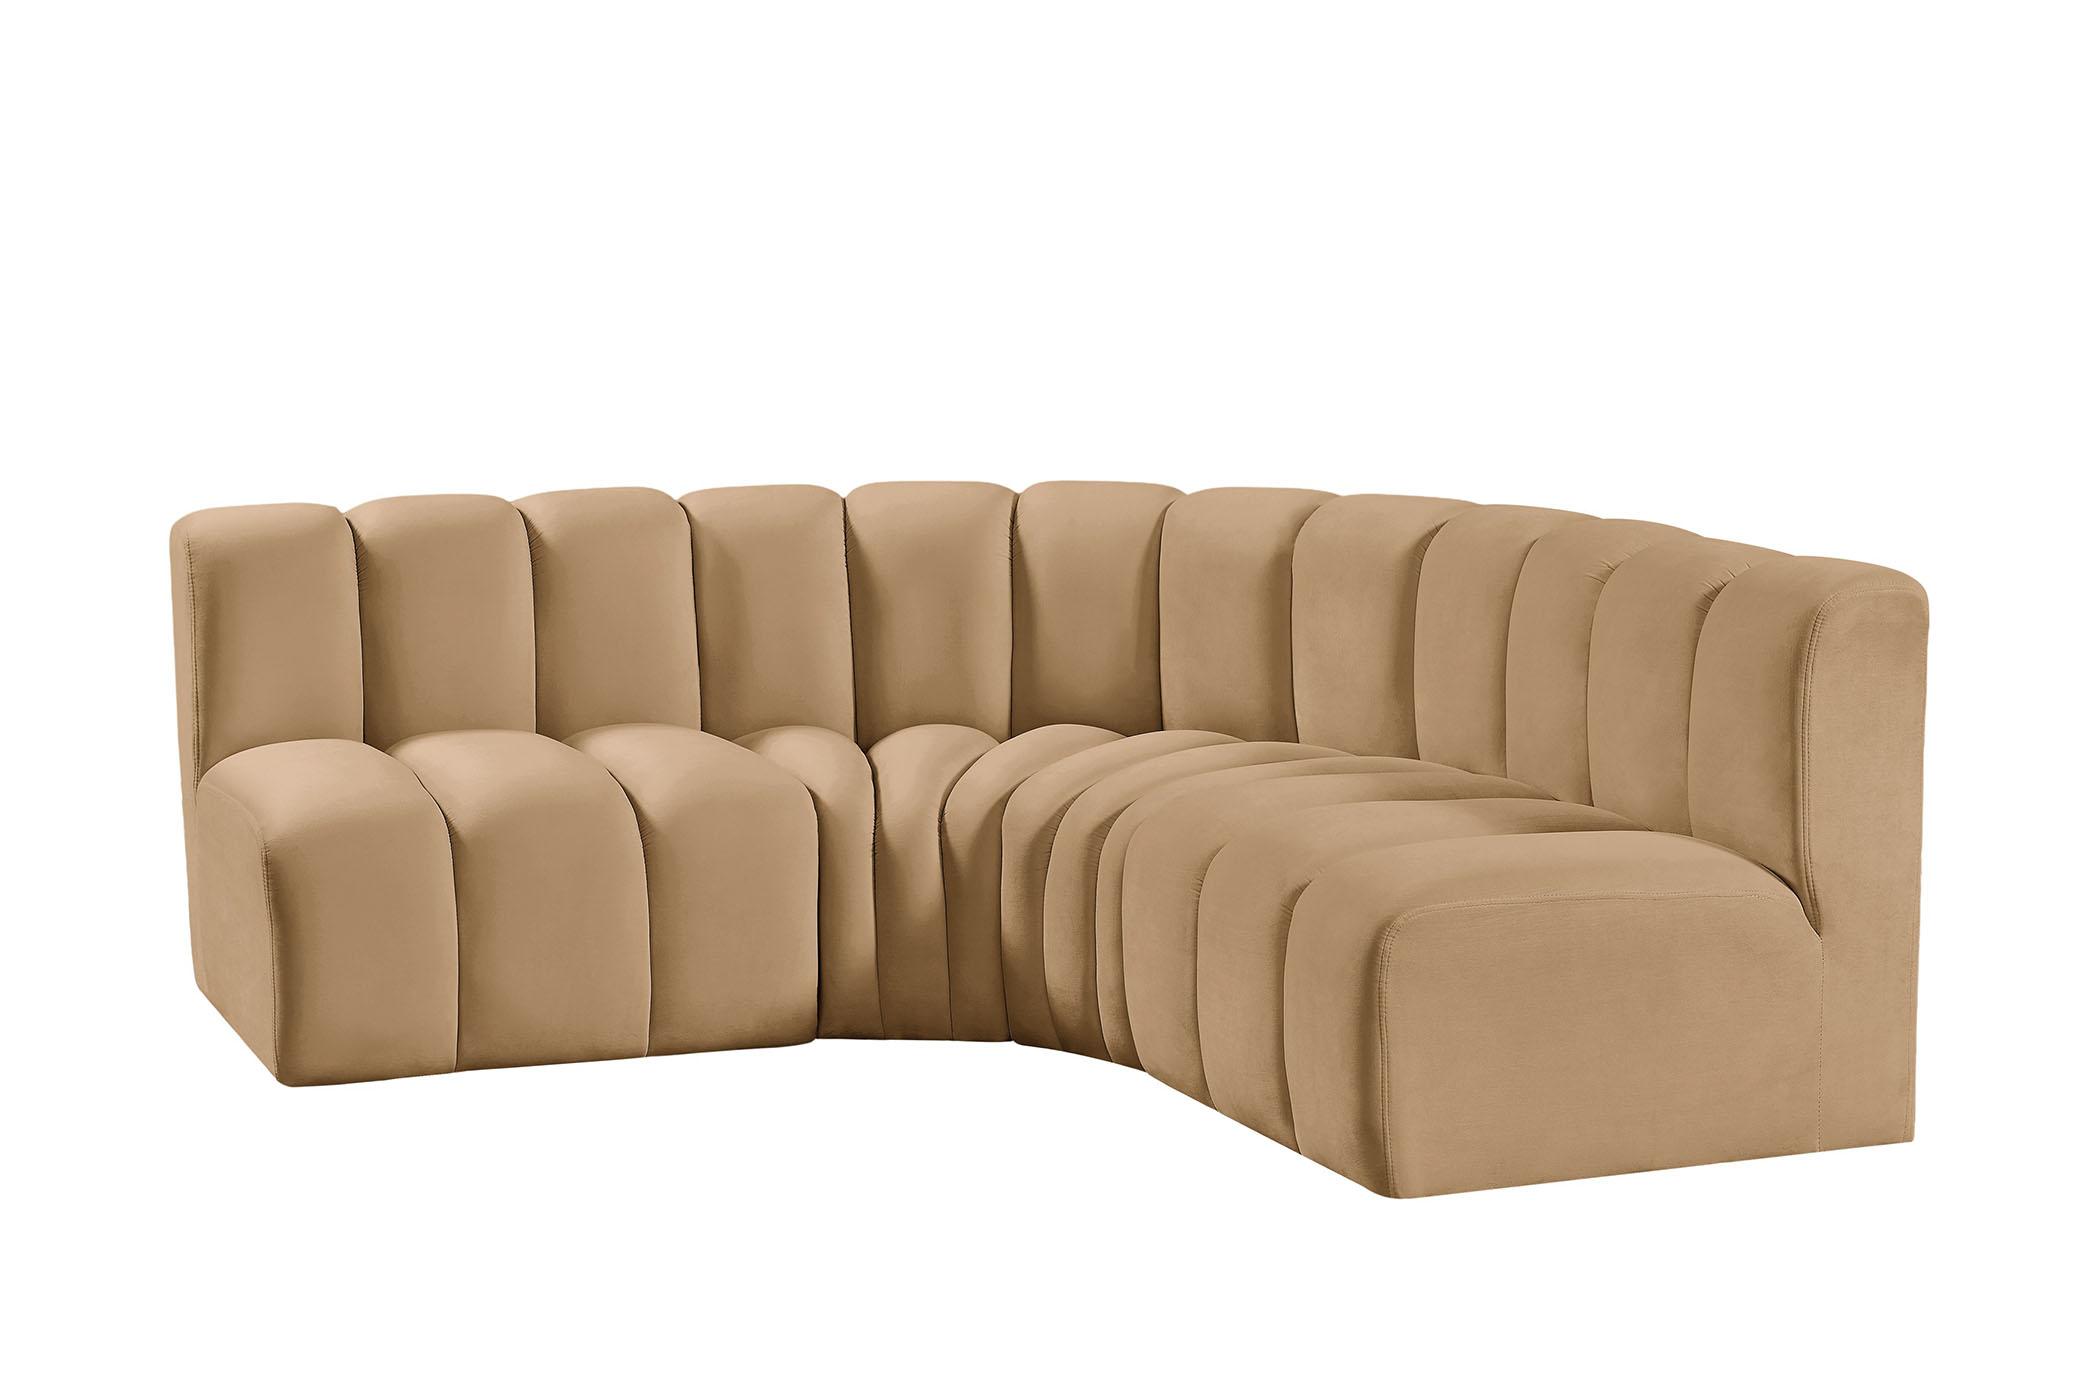 

    
103Camel-S4B Meridian Furniture Modular Sectional Sofa
